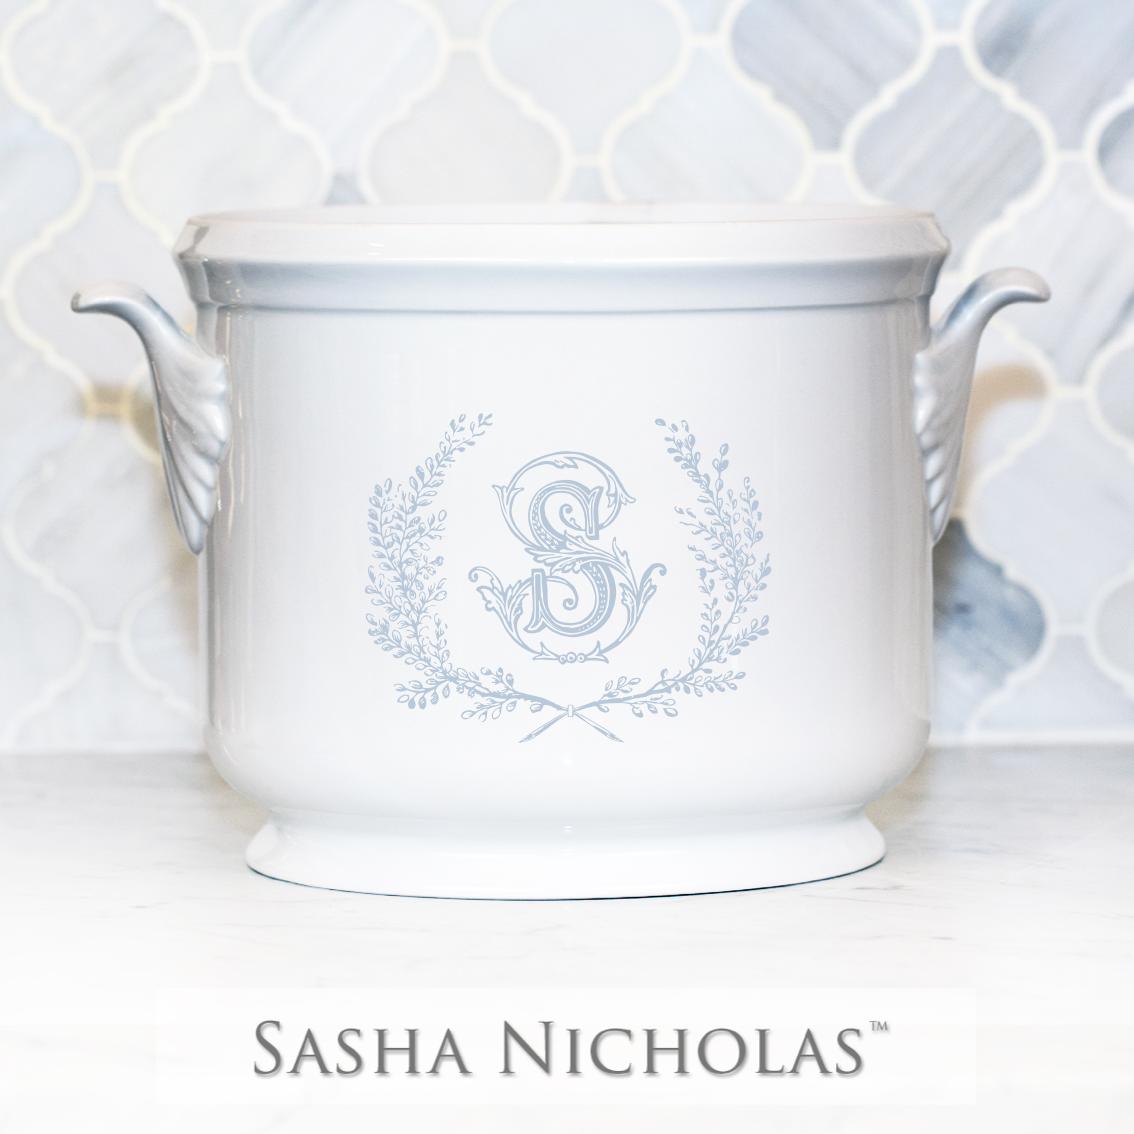 Sasha Nicholas Branham-Snowden Champagne Bucket 